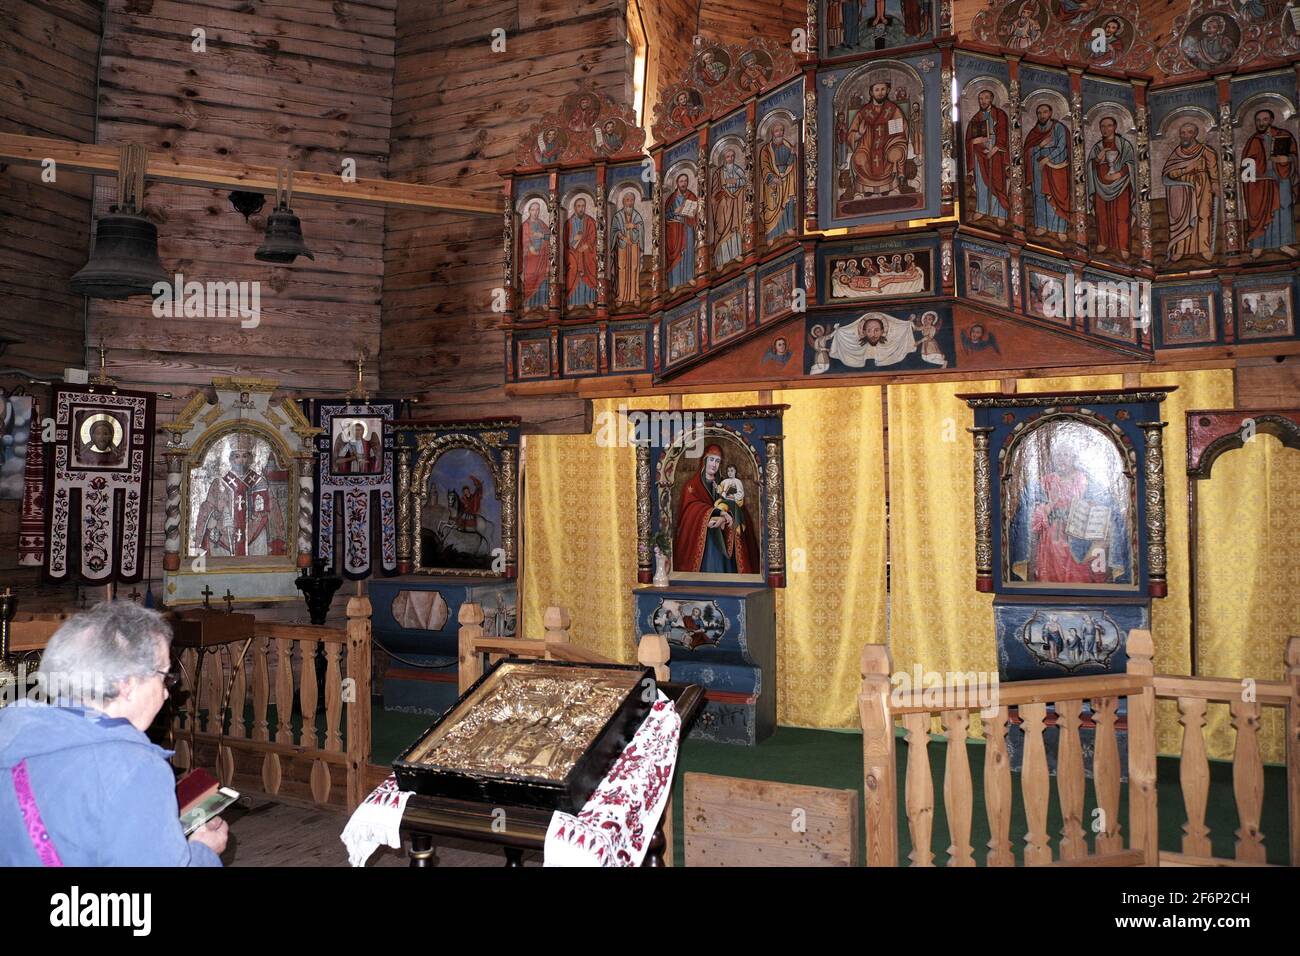 Painted panels in wooden church, Cossack Museum, Khortitsa Island, River Dnieper, Zaporozhye, Ukraine. Stock Photo